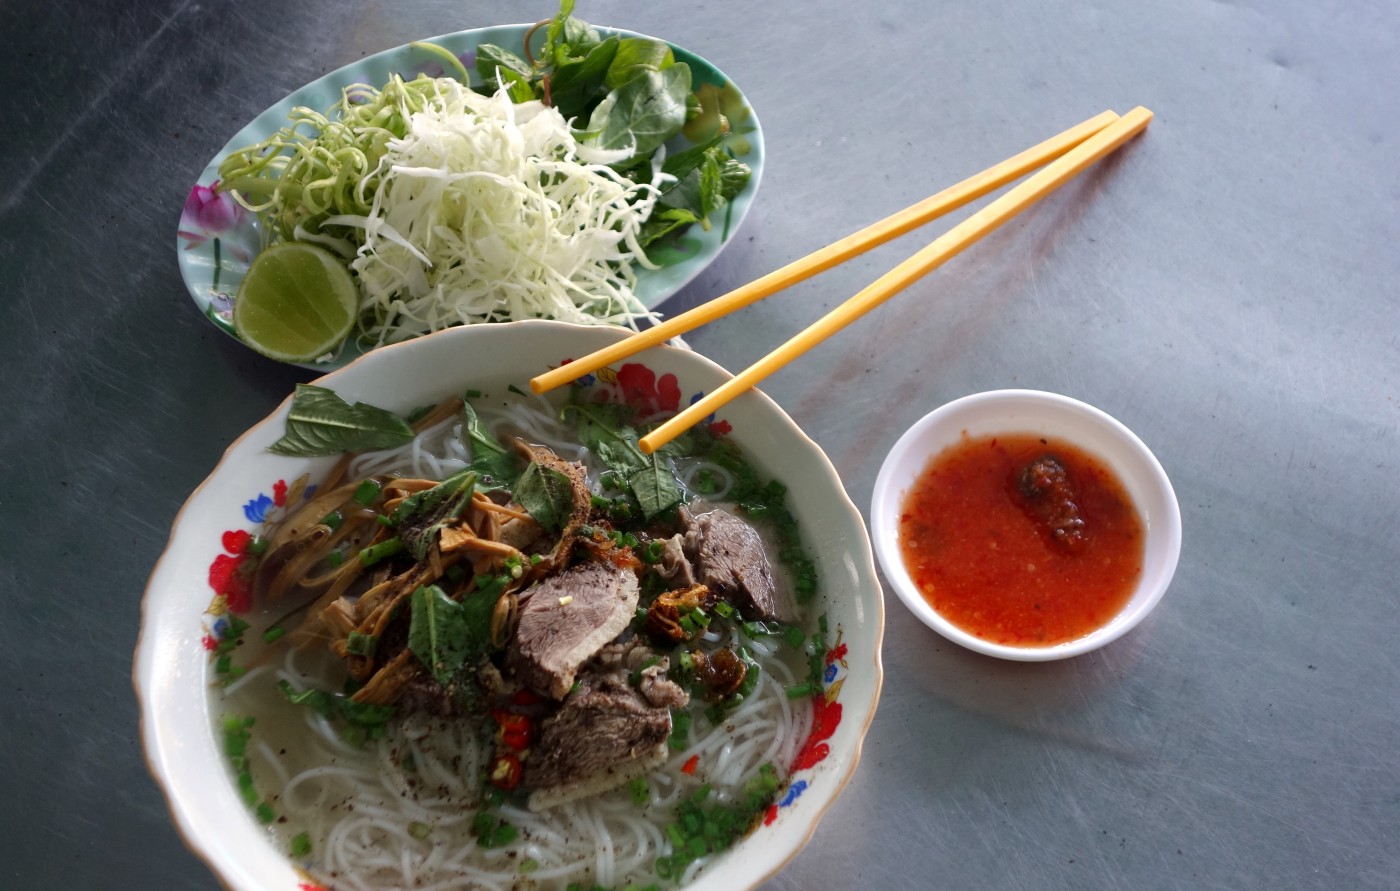 Bung mang vit - Vietnamese duck noodle soup